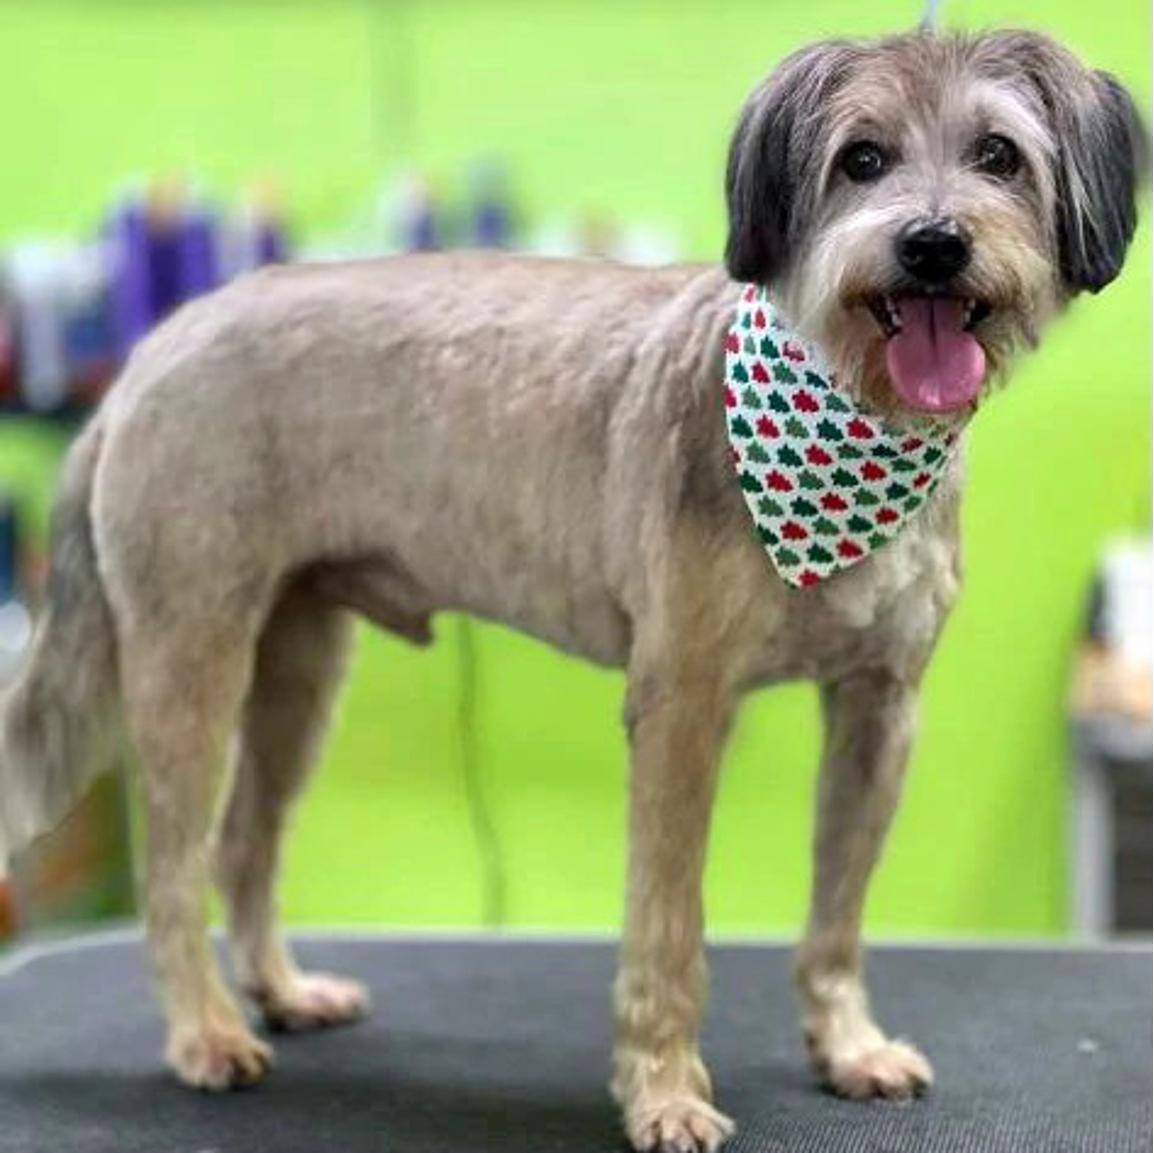 A dog wearing a bandana